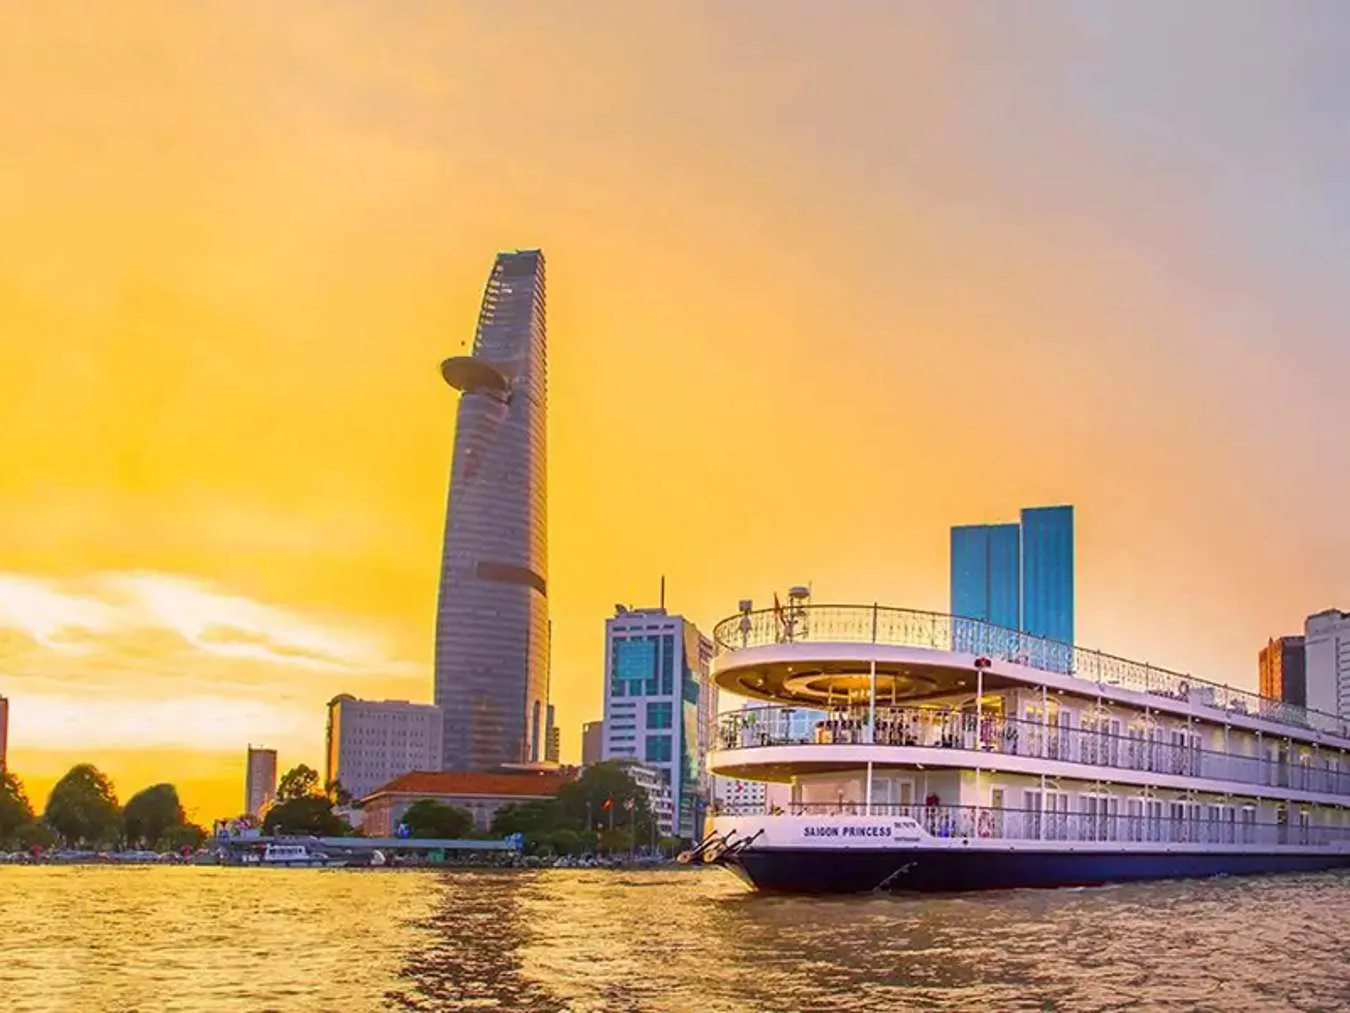 Dạo sông Sài Gòn là một trải nghiệm đáng thử khi ghé thăm thành phố